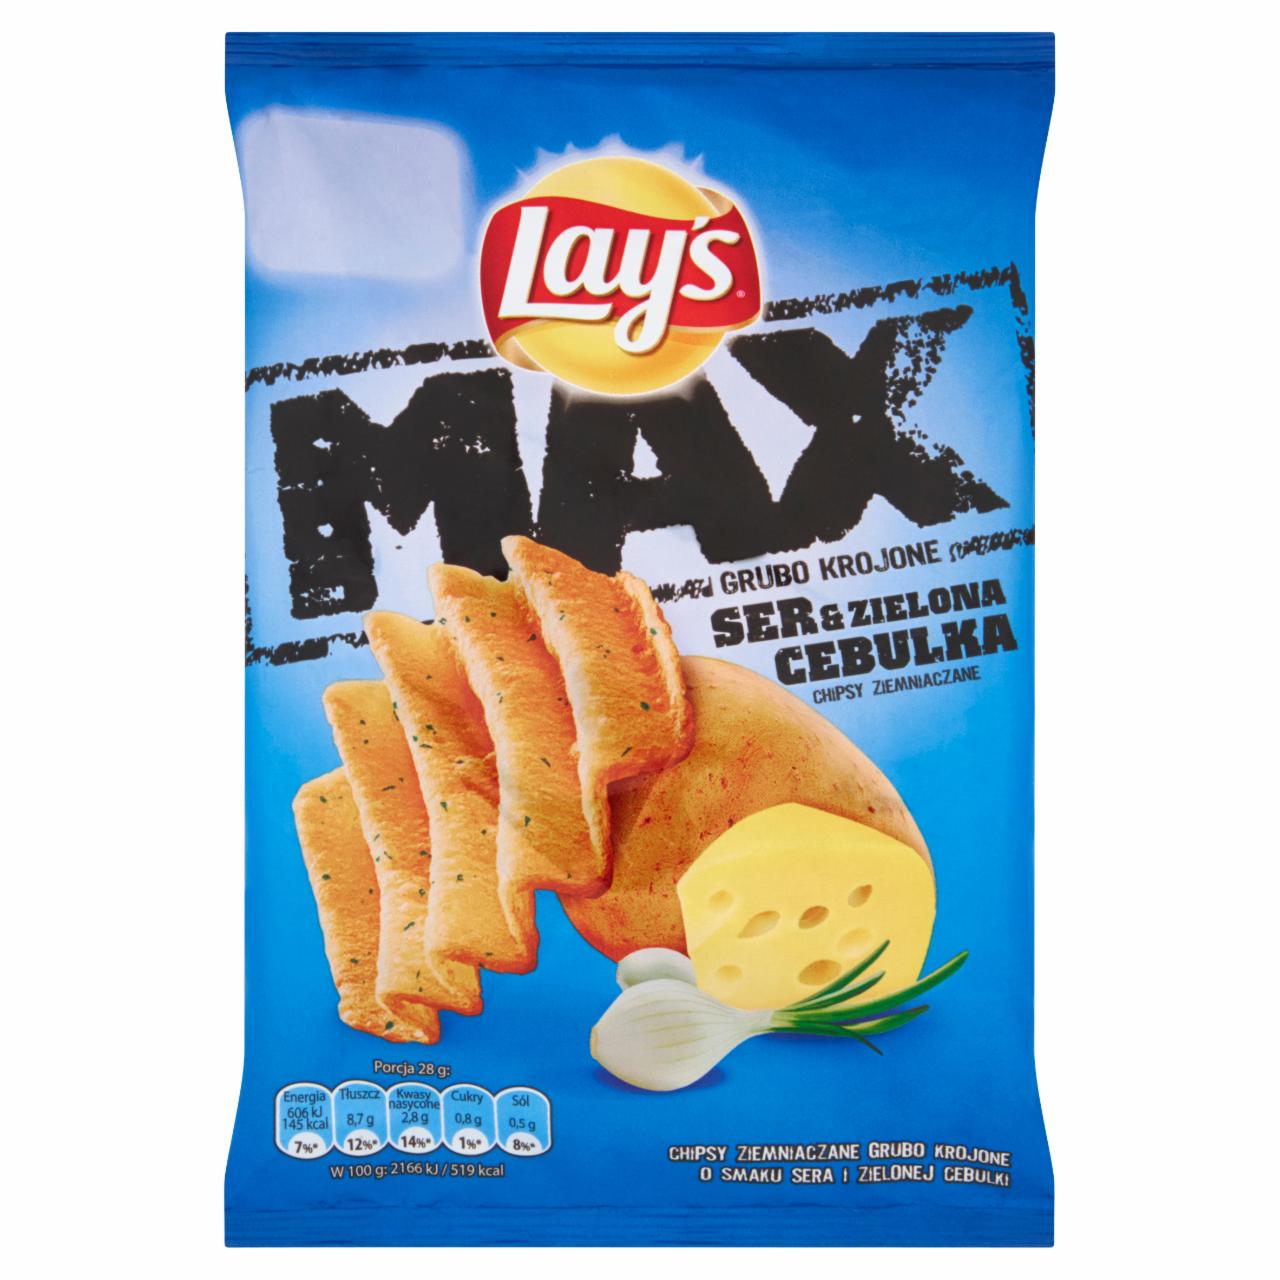 Zdjęcia - Lay's Max Ser & zielona cebulka Chipsy ziemniaczane 28 g